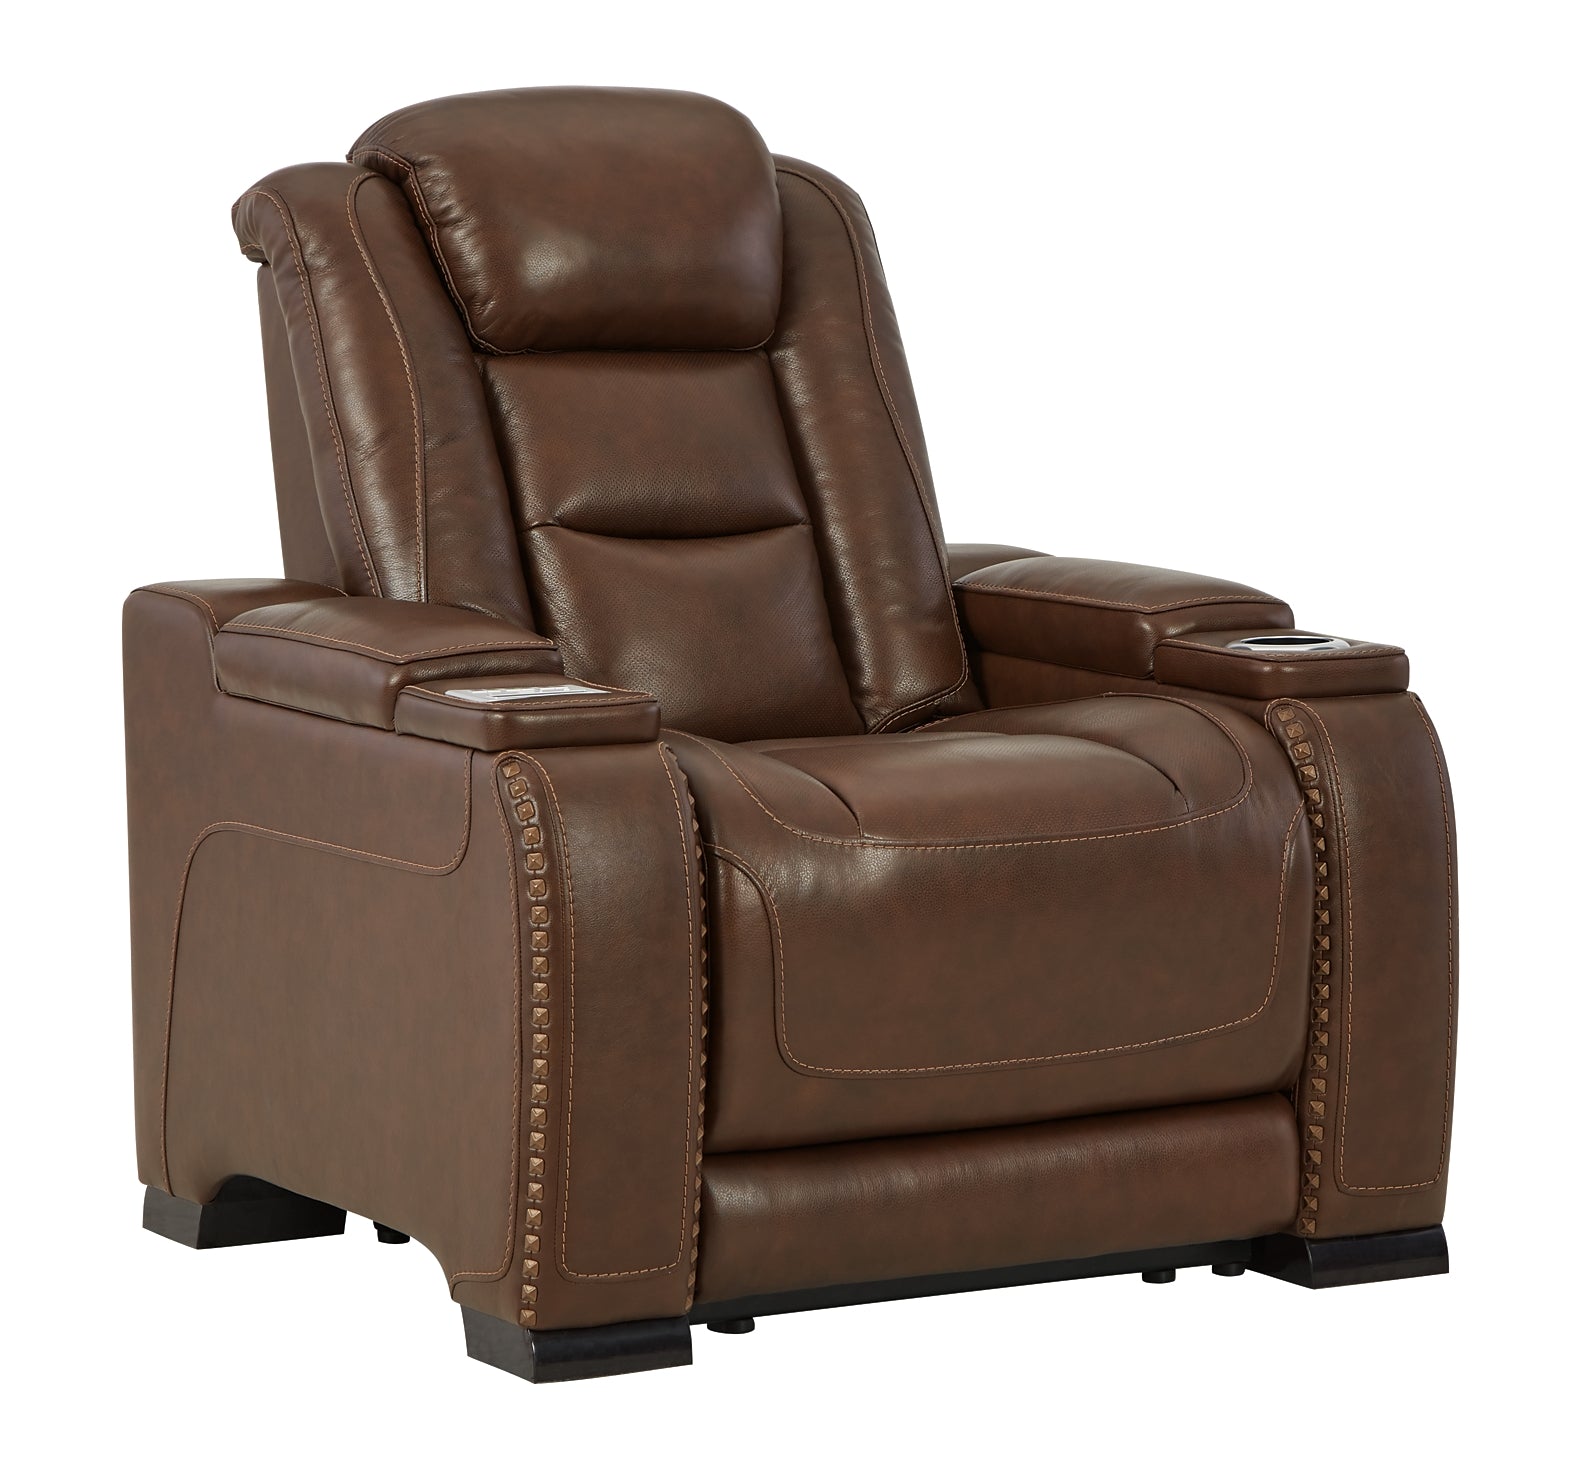 The Man-Den PWR Recliner/ADJ Headrest Smyrna Furniture Outlet